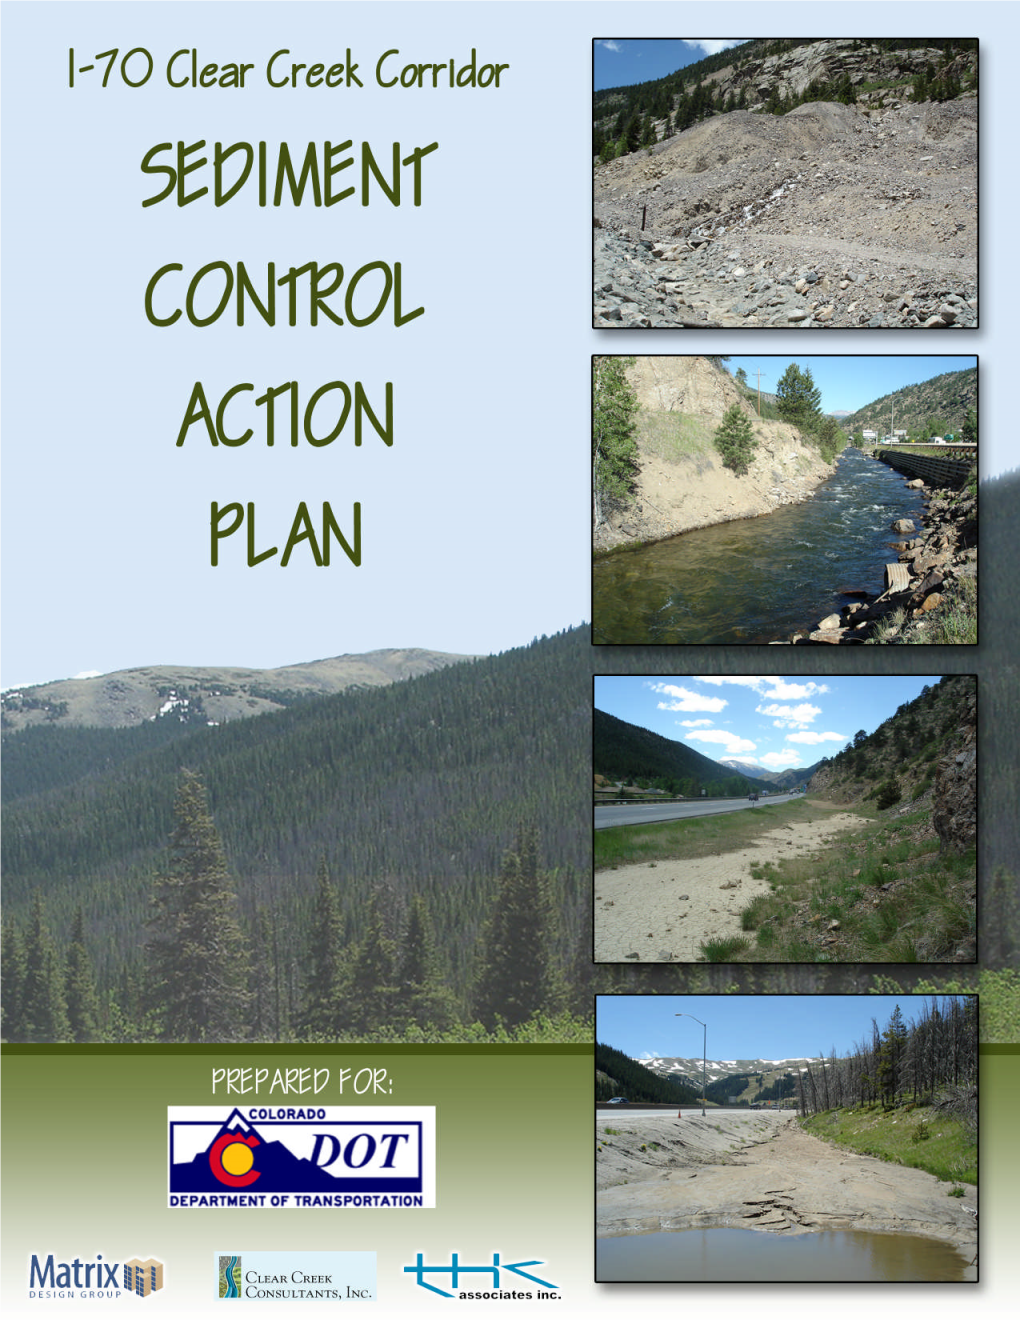 Clear Creek Sediment Control Action Plan (SCAP)